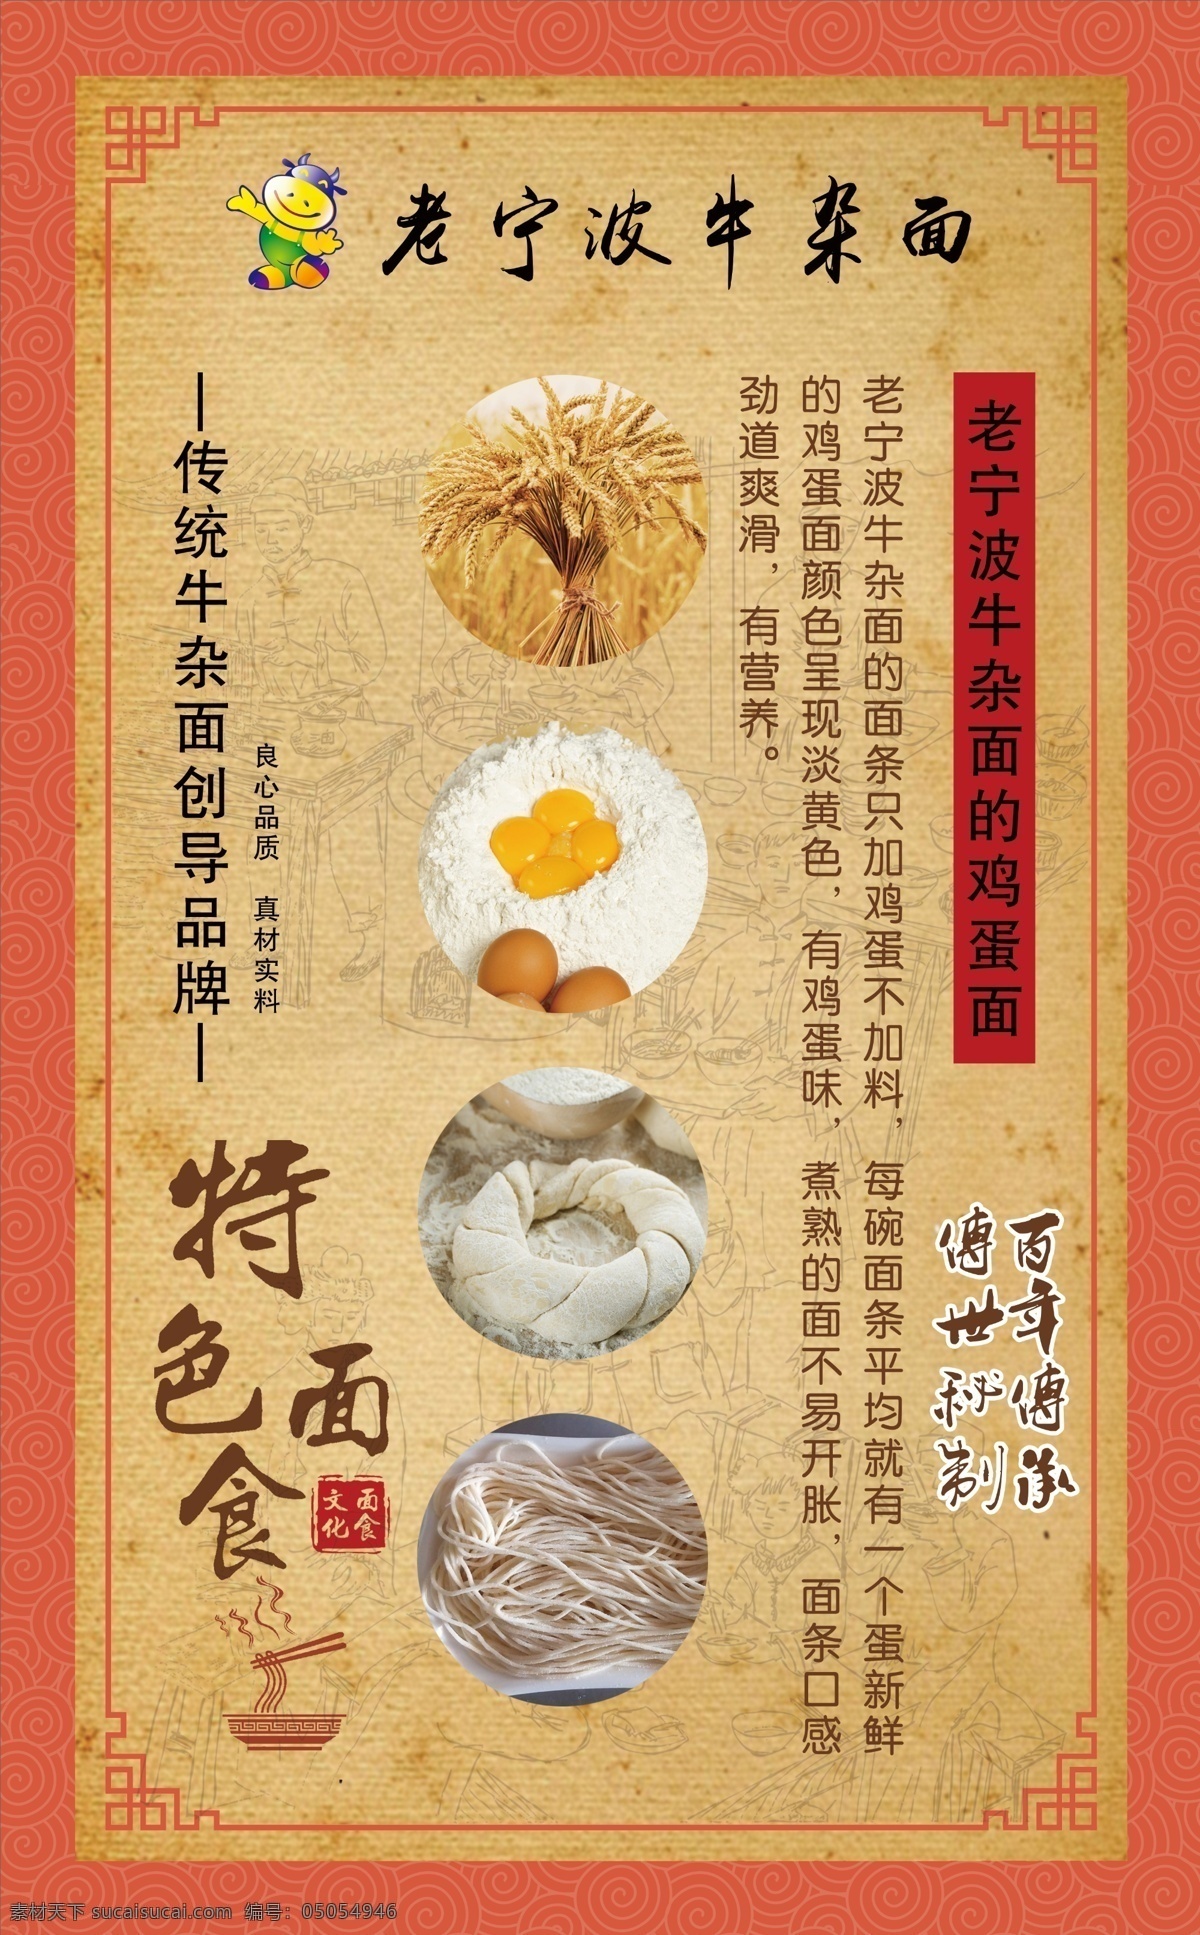 牛杂面拉面 面食文化 传统面食 展板 面食挂画 面馆海报 面食人物 中华传统面食